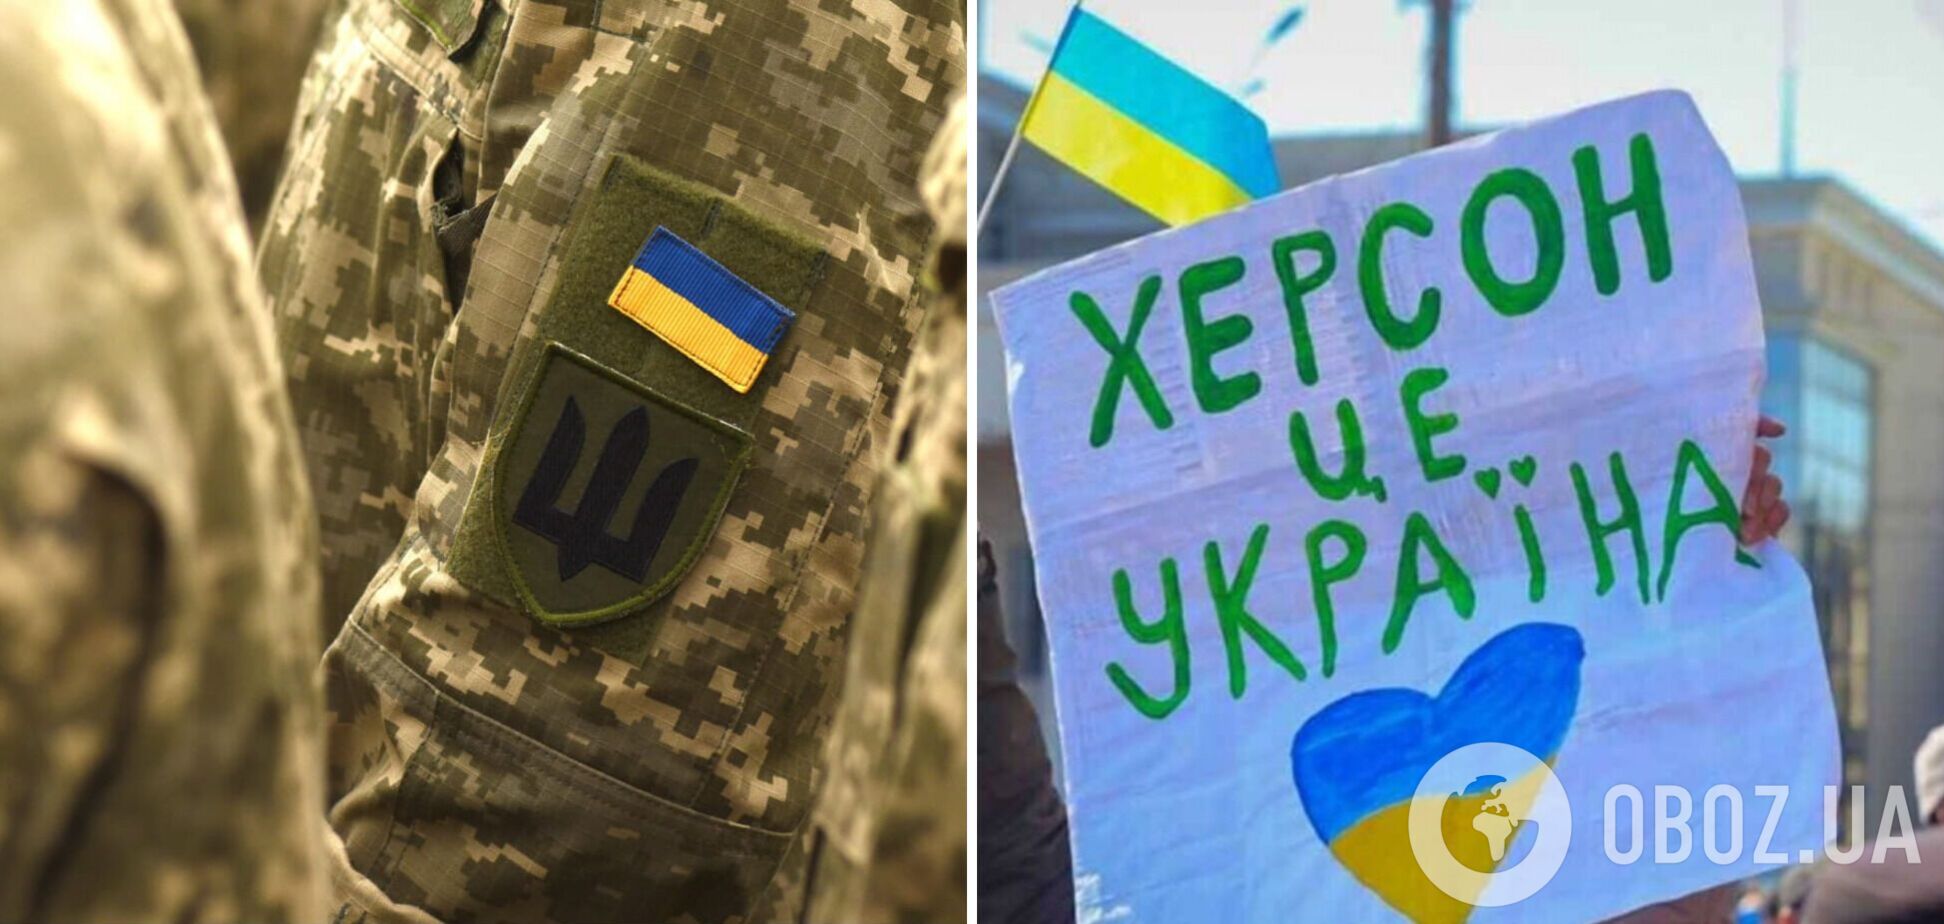 'Херсоне, тримайся!' Українські захисники записали звернення за 10 км від міста. Відео